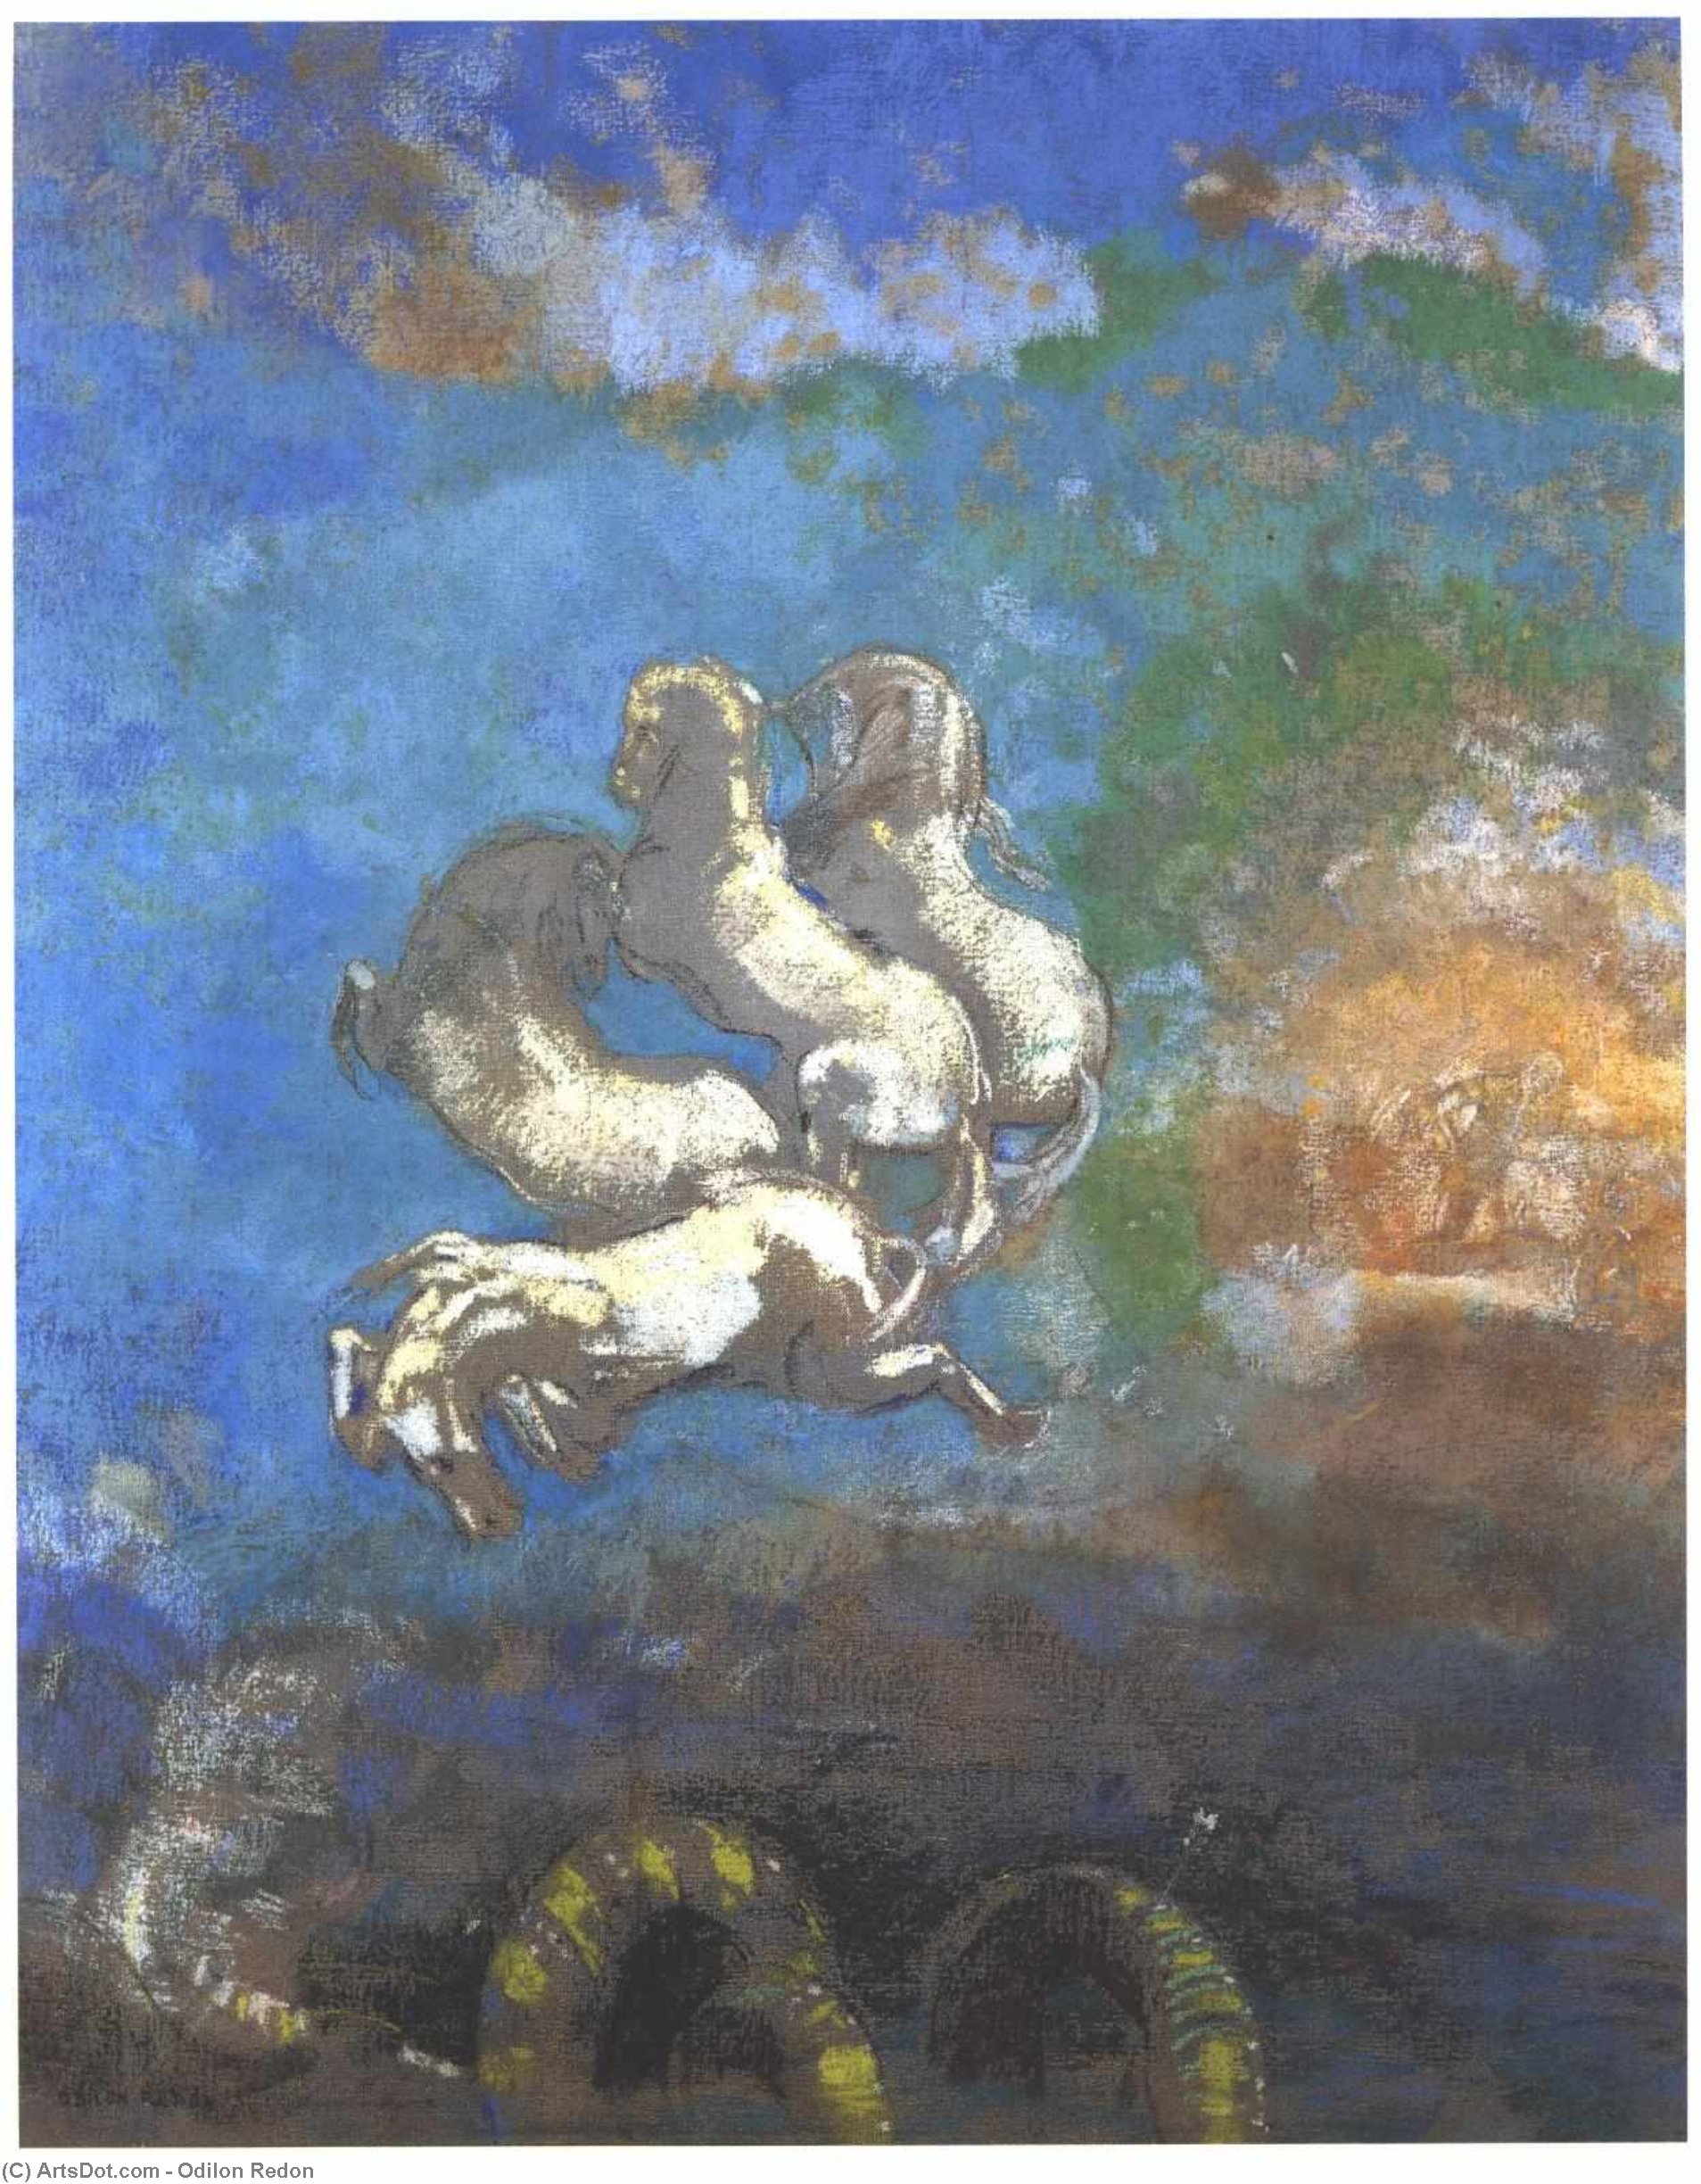 WikiOO.org - Encyclopedia of Fine Arts - Festés, Grafika Odilon Redon - Apollo's Chariot